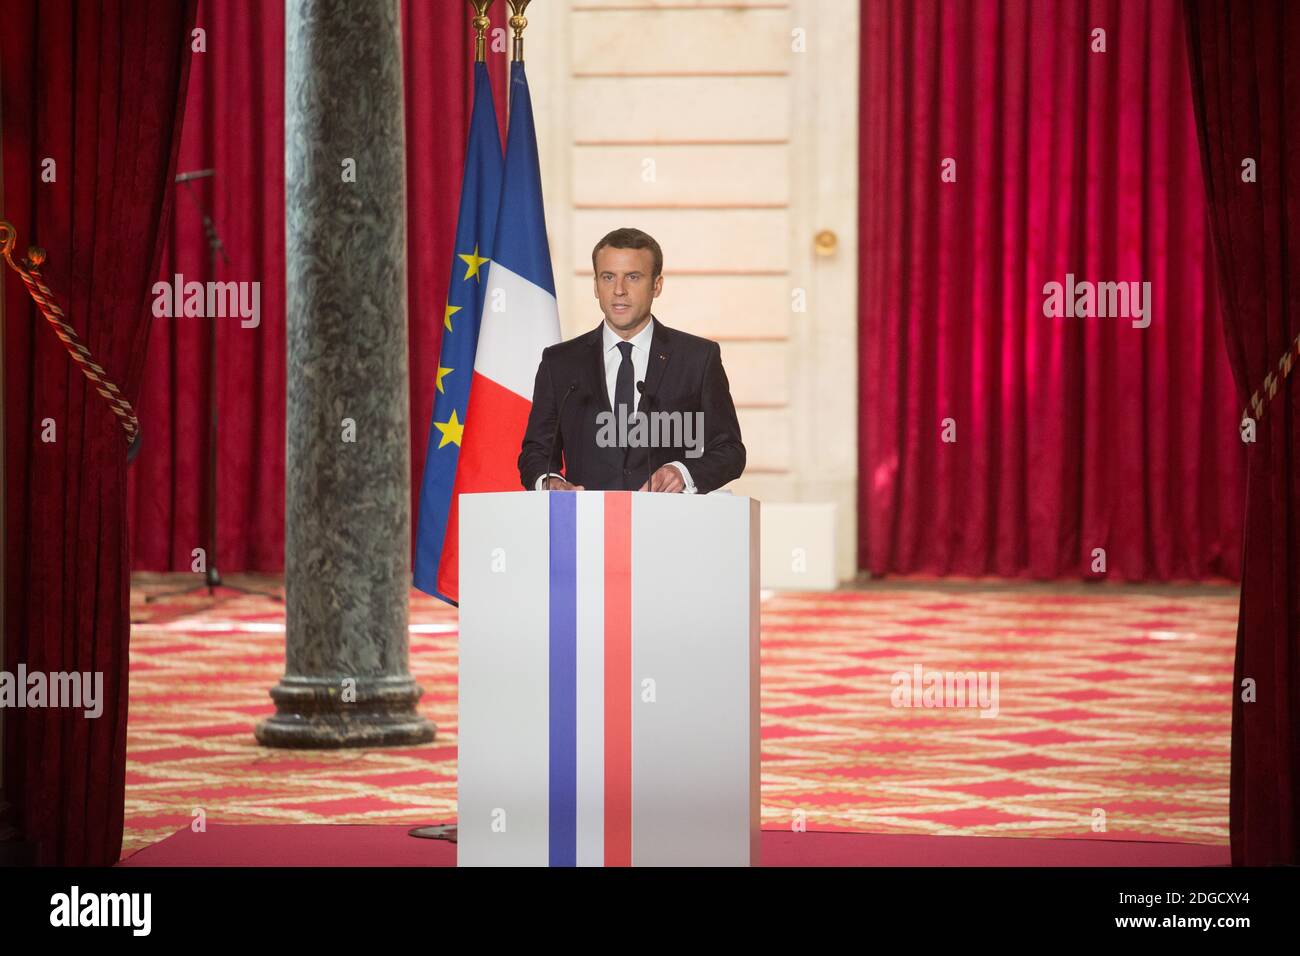 Der französische Präsident Emmanuel Macron spricht während seiner feierlichen Amtseinführung als französischer Präsident am 14. Mai 2017 in der Salle des Fetes des Präsidentenpalastes Elysee in Paris. Foto von Hamilton/Pool/ABACAPRESS.COM Stockfoto